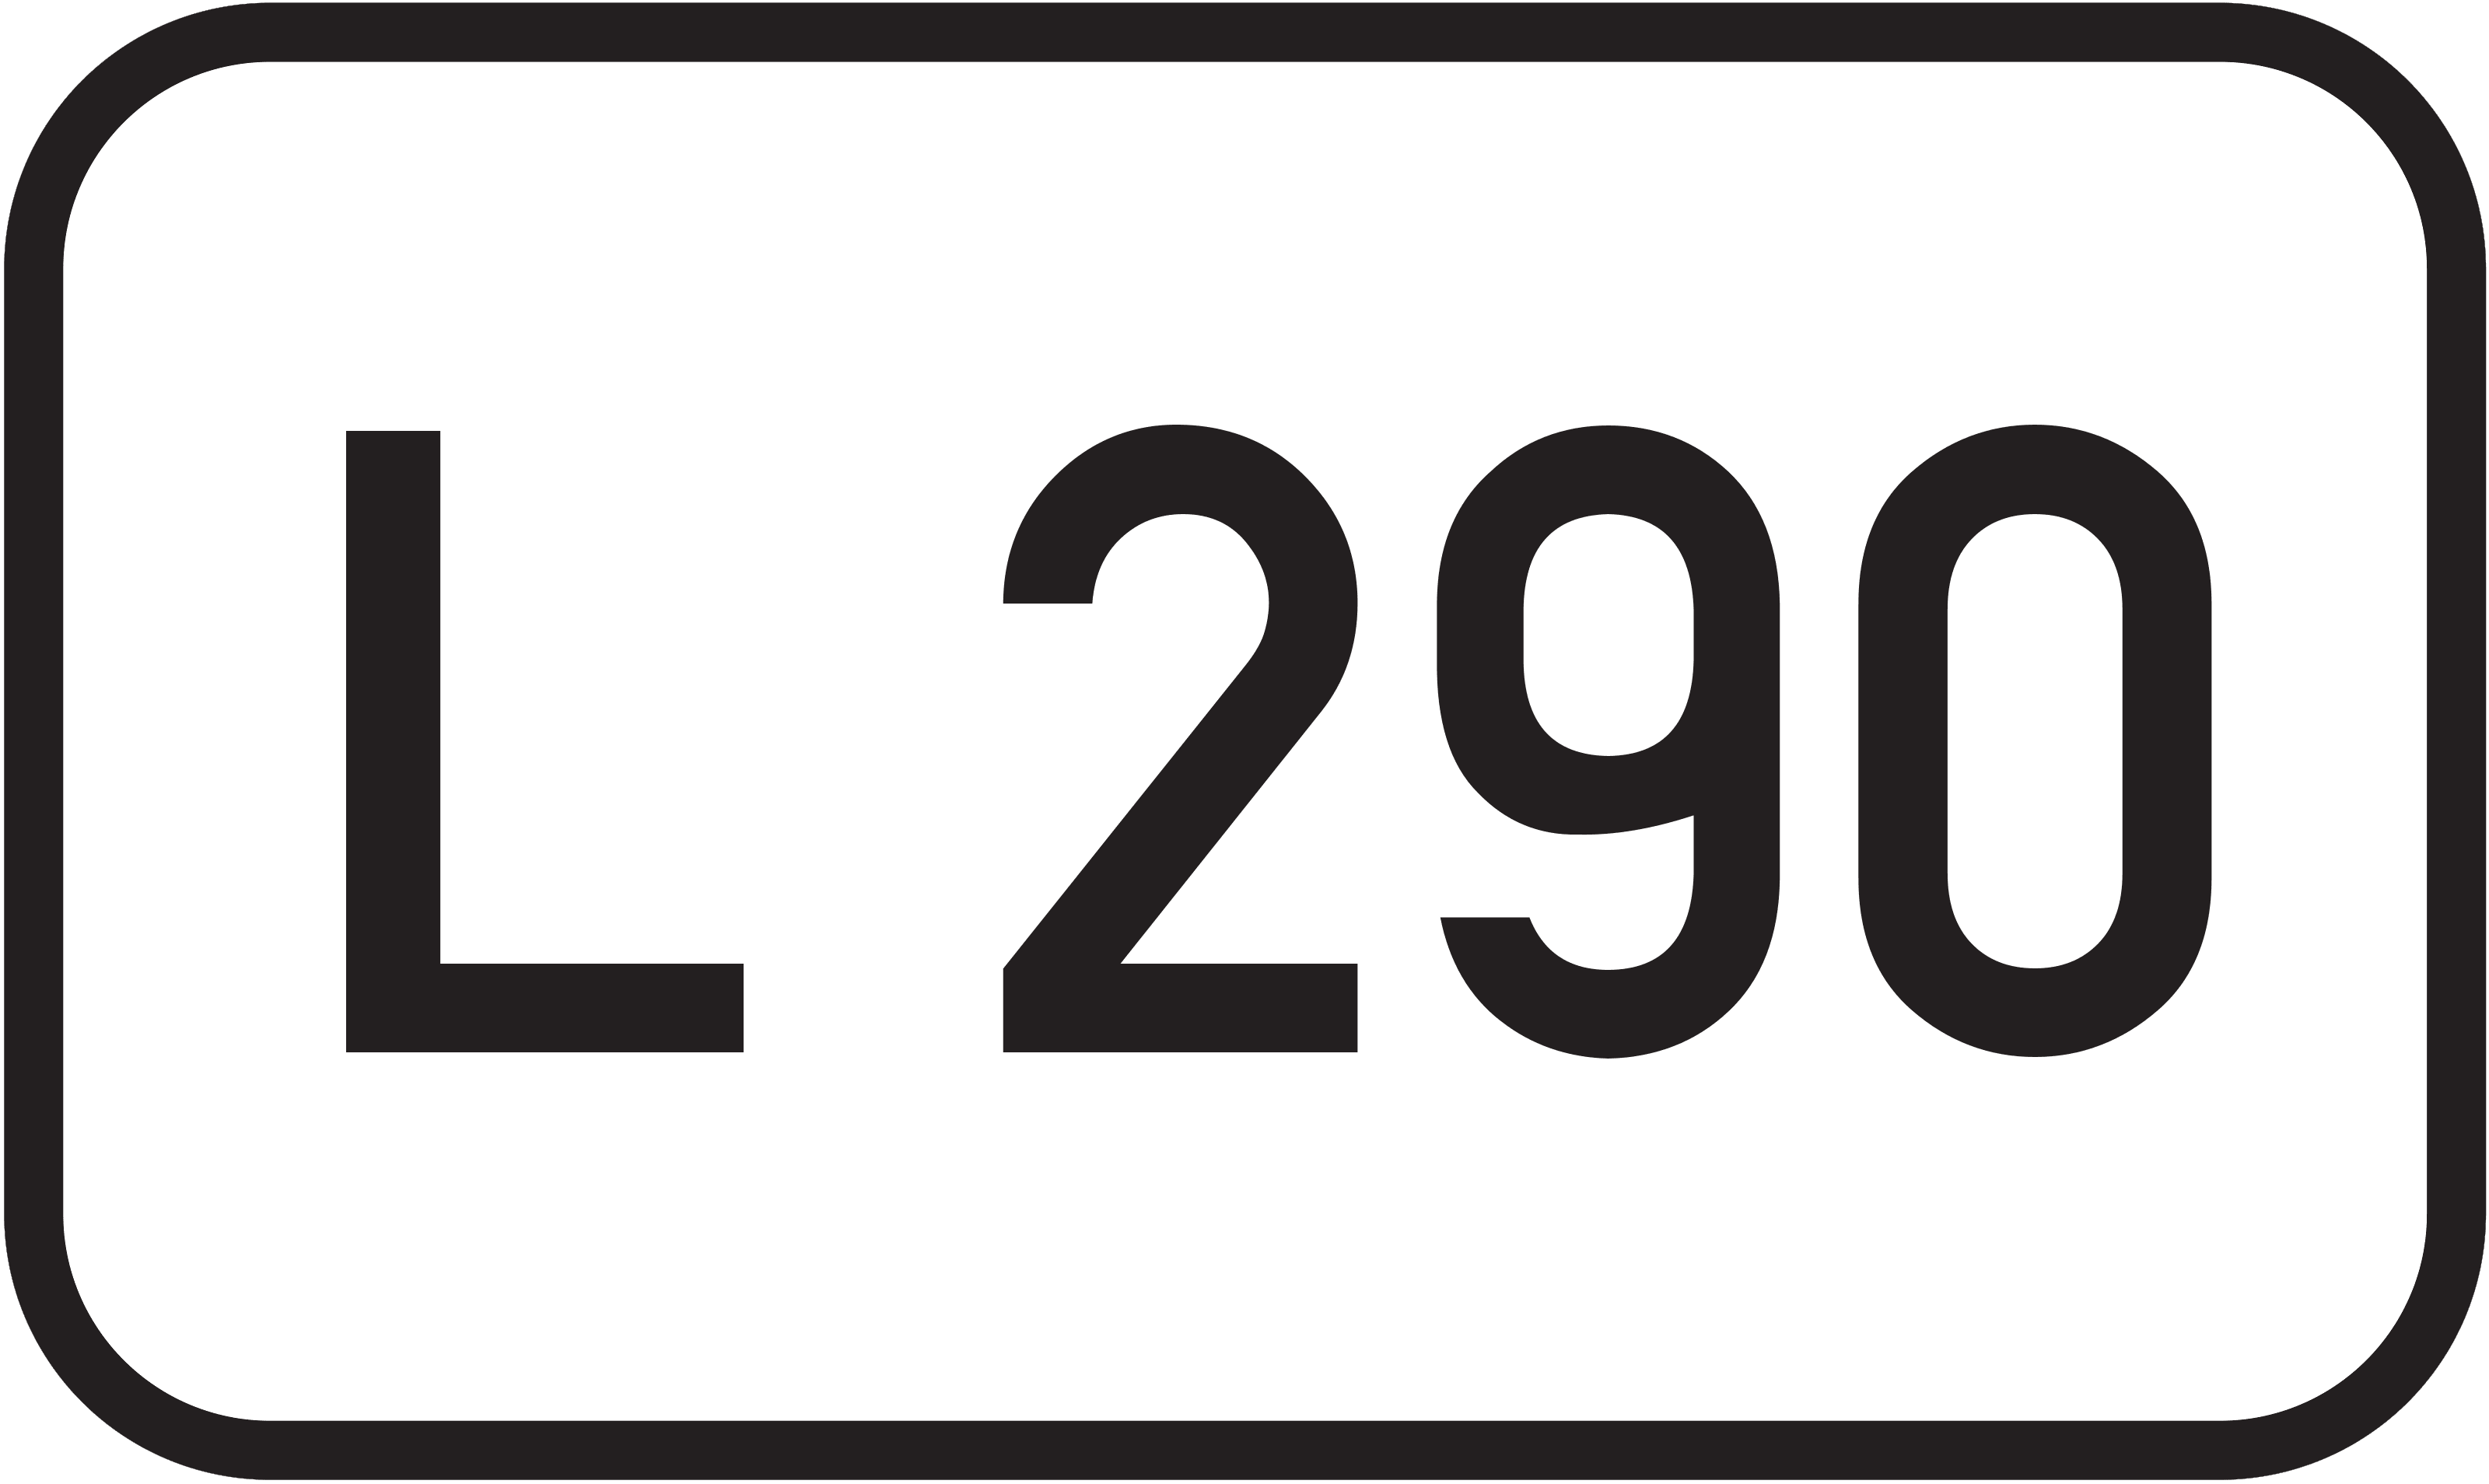 Landesstraße L 290